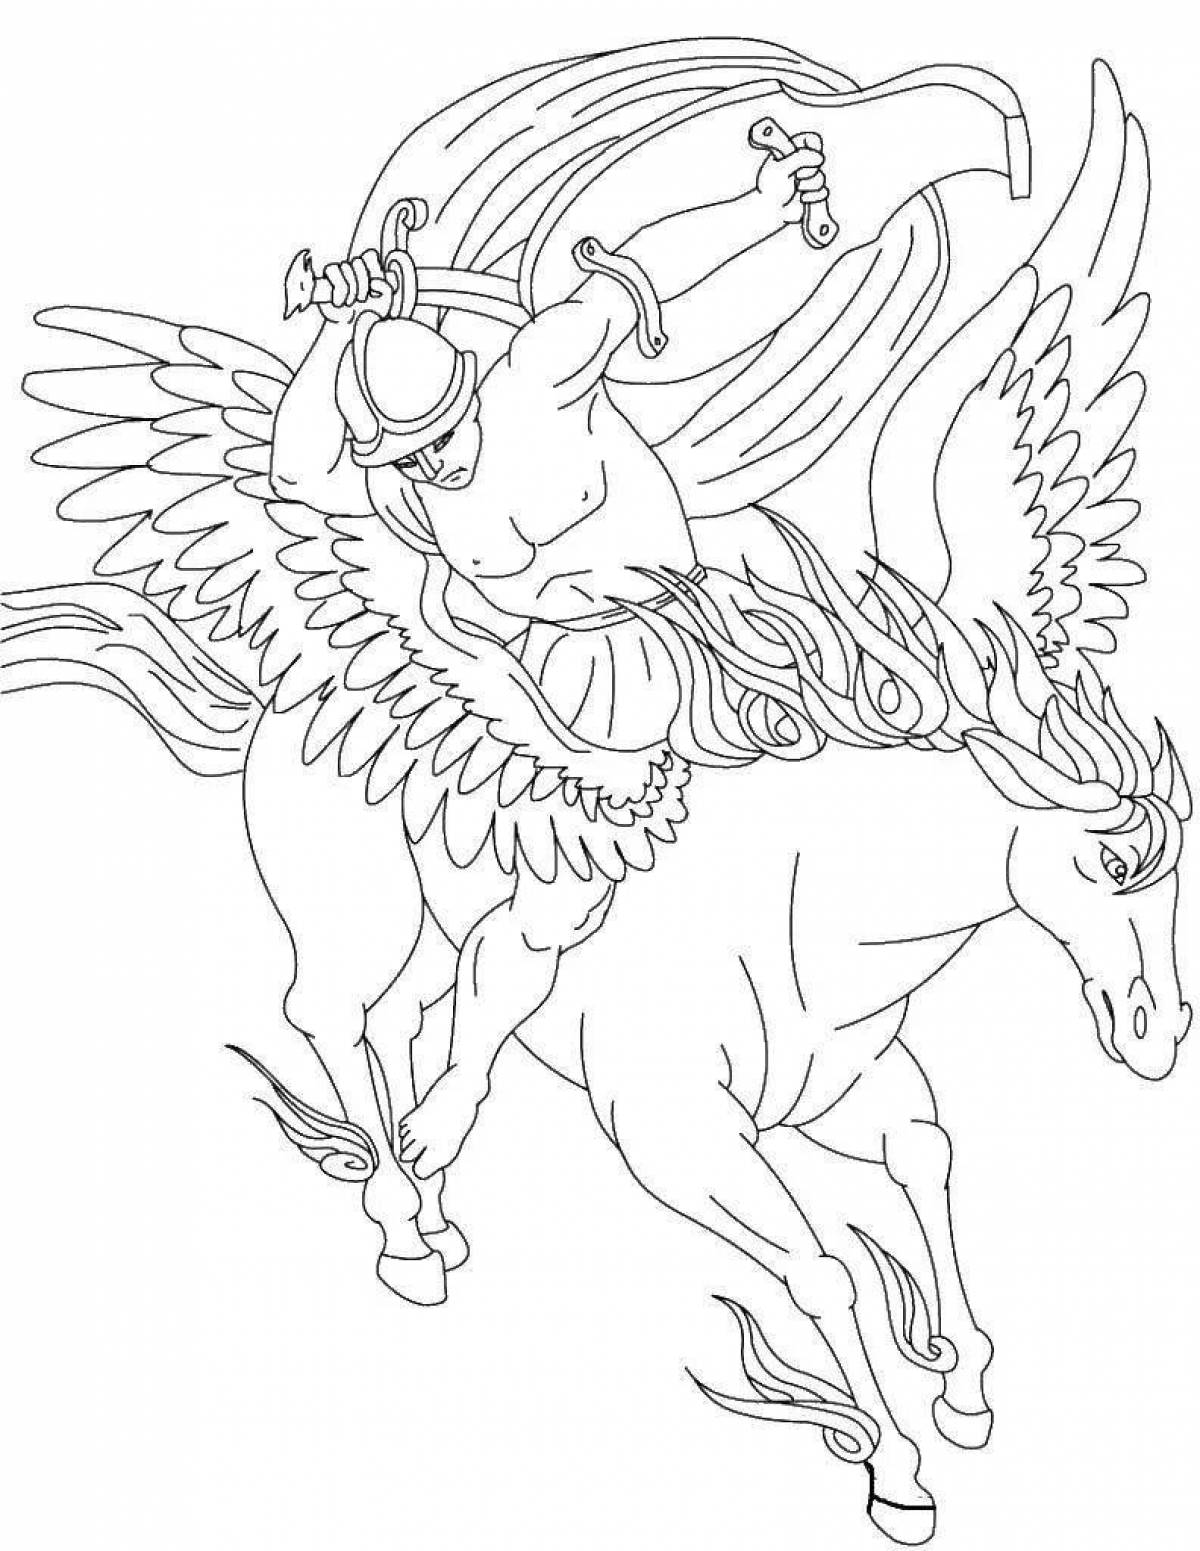 Pegasus coloring book for kids